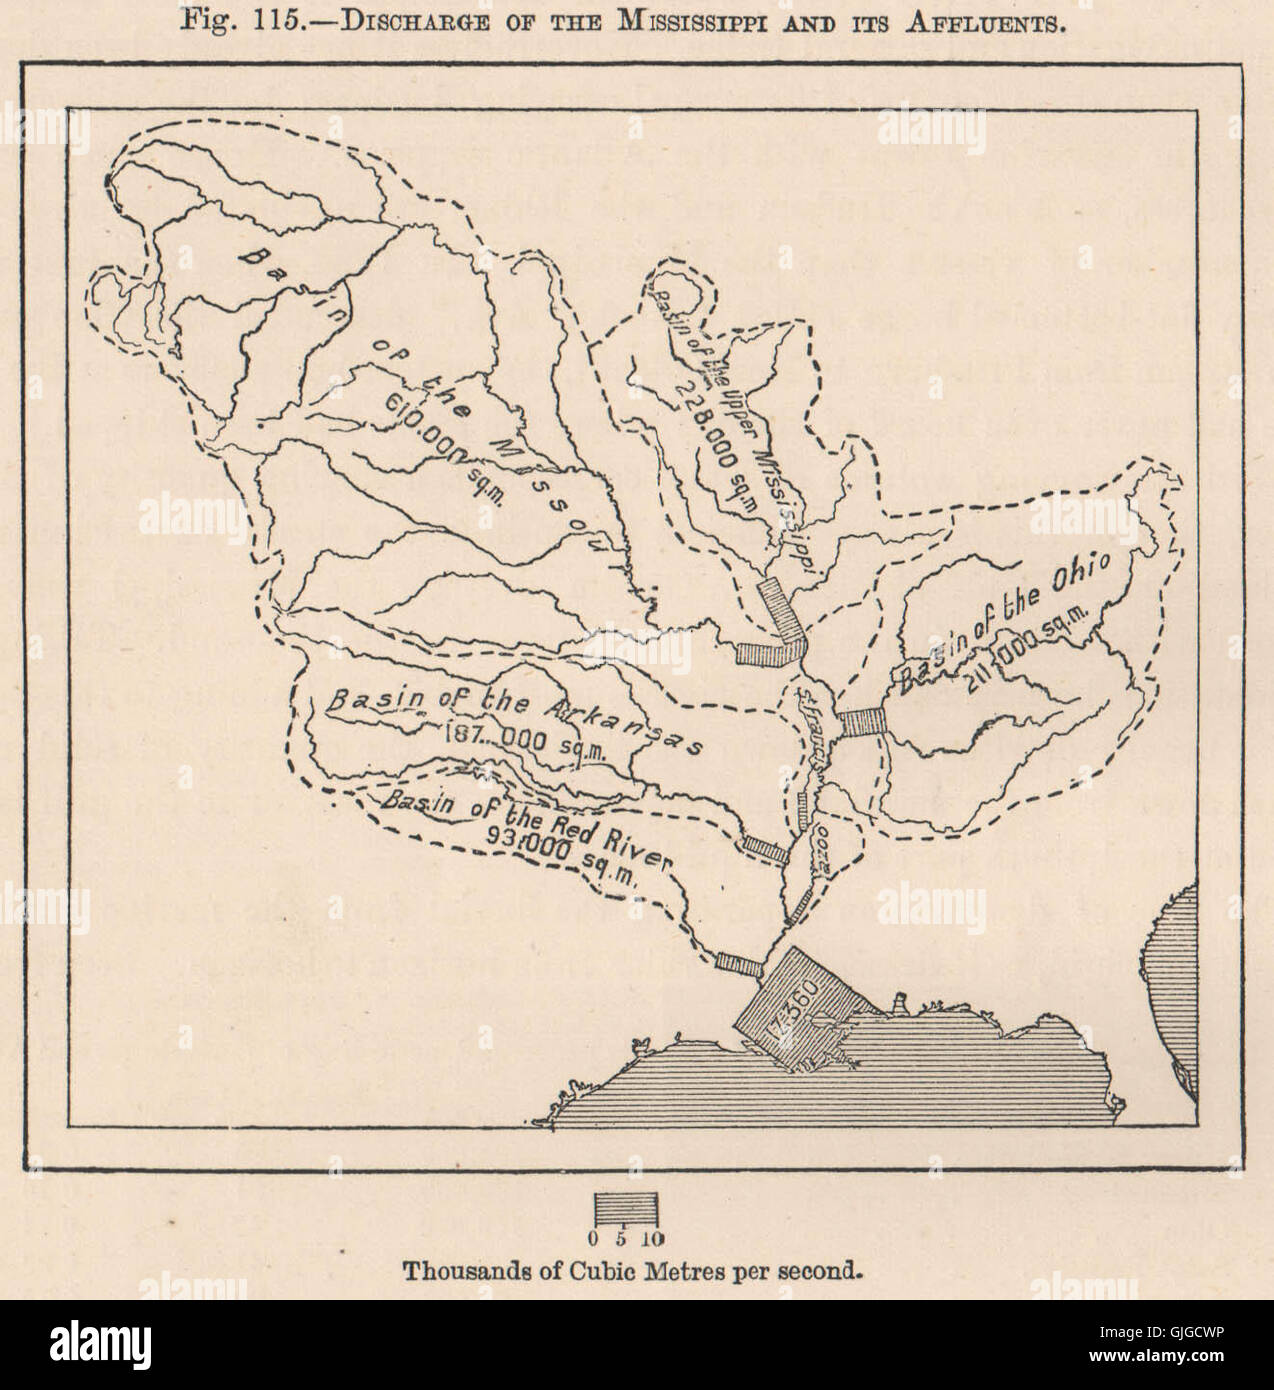 Descarga de la Mississippi y sus afluentes. Mapa antiguo de 1885, EE.UU. Foto de stock